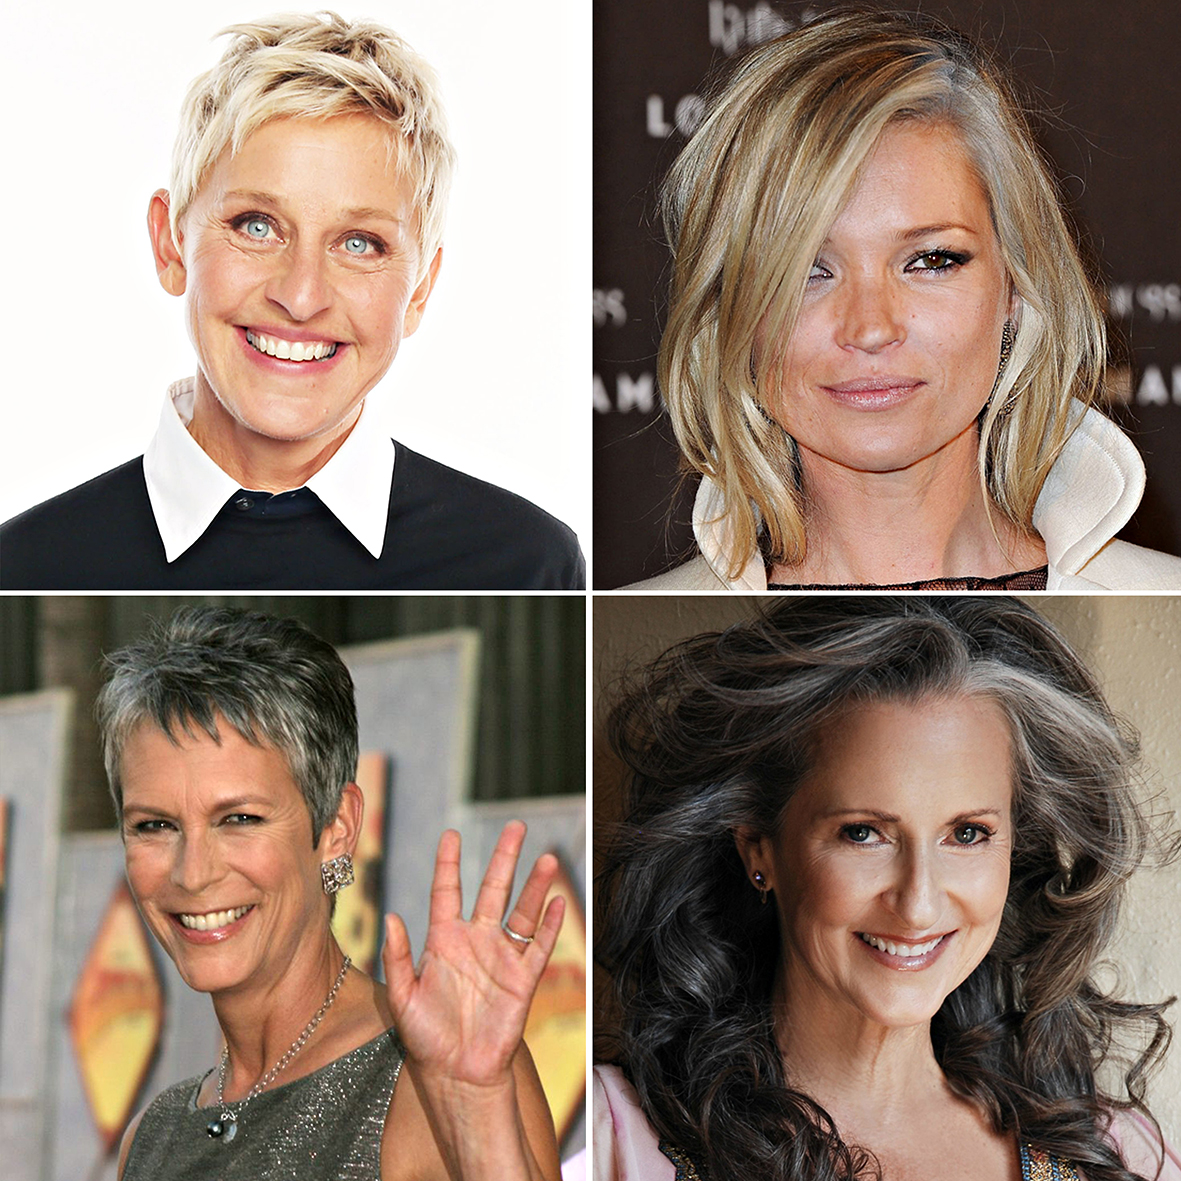 Grisalhas e lindas, Ellen DeGeneres (57), Kate Moss (40), Jamie Lee Curtis (56) e Denise Buchoz (52) assumiram os brancos e ditam moda entre as mulheres maduras e descoladas.